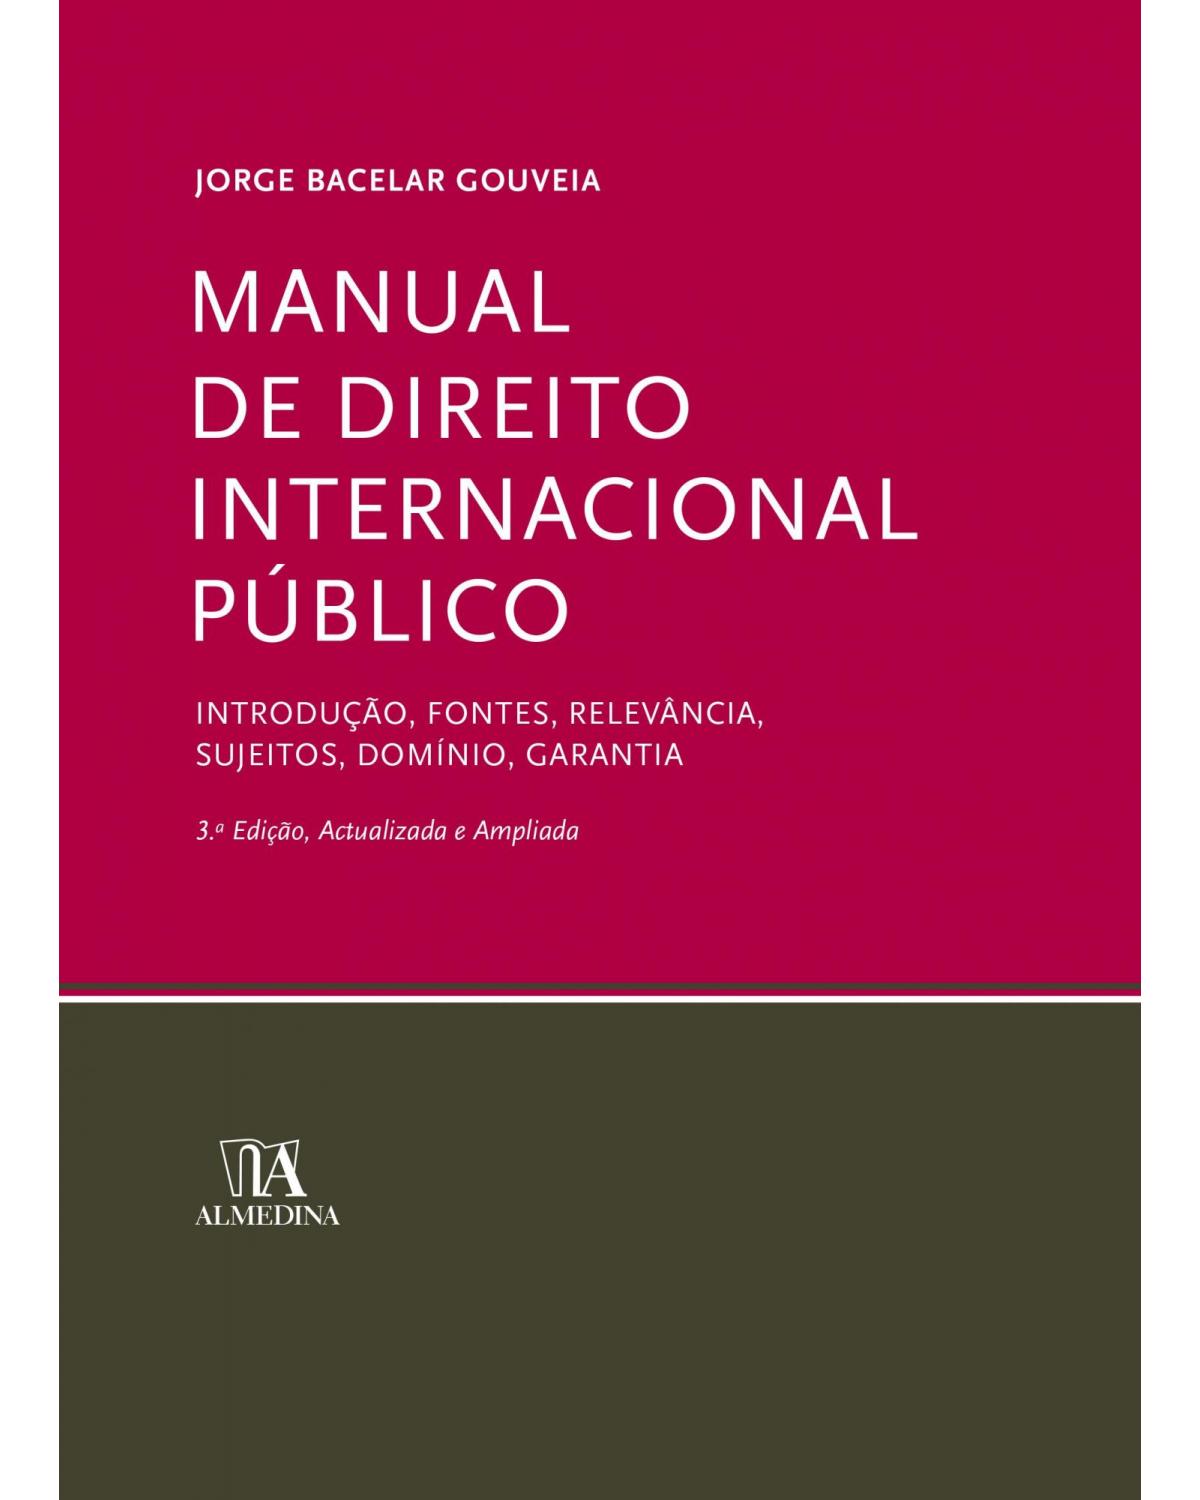 Manual de direito internacional público - 3ª Edição | 2019